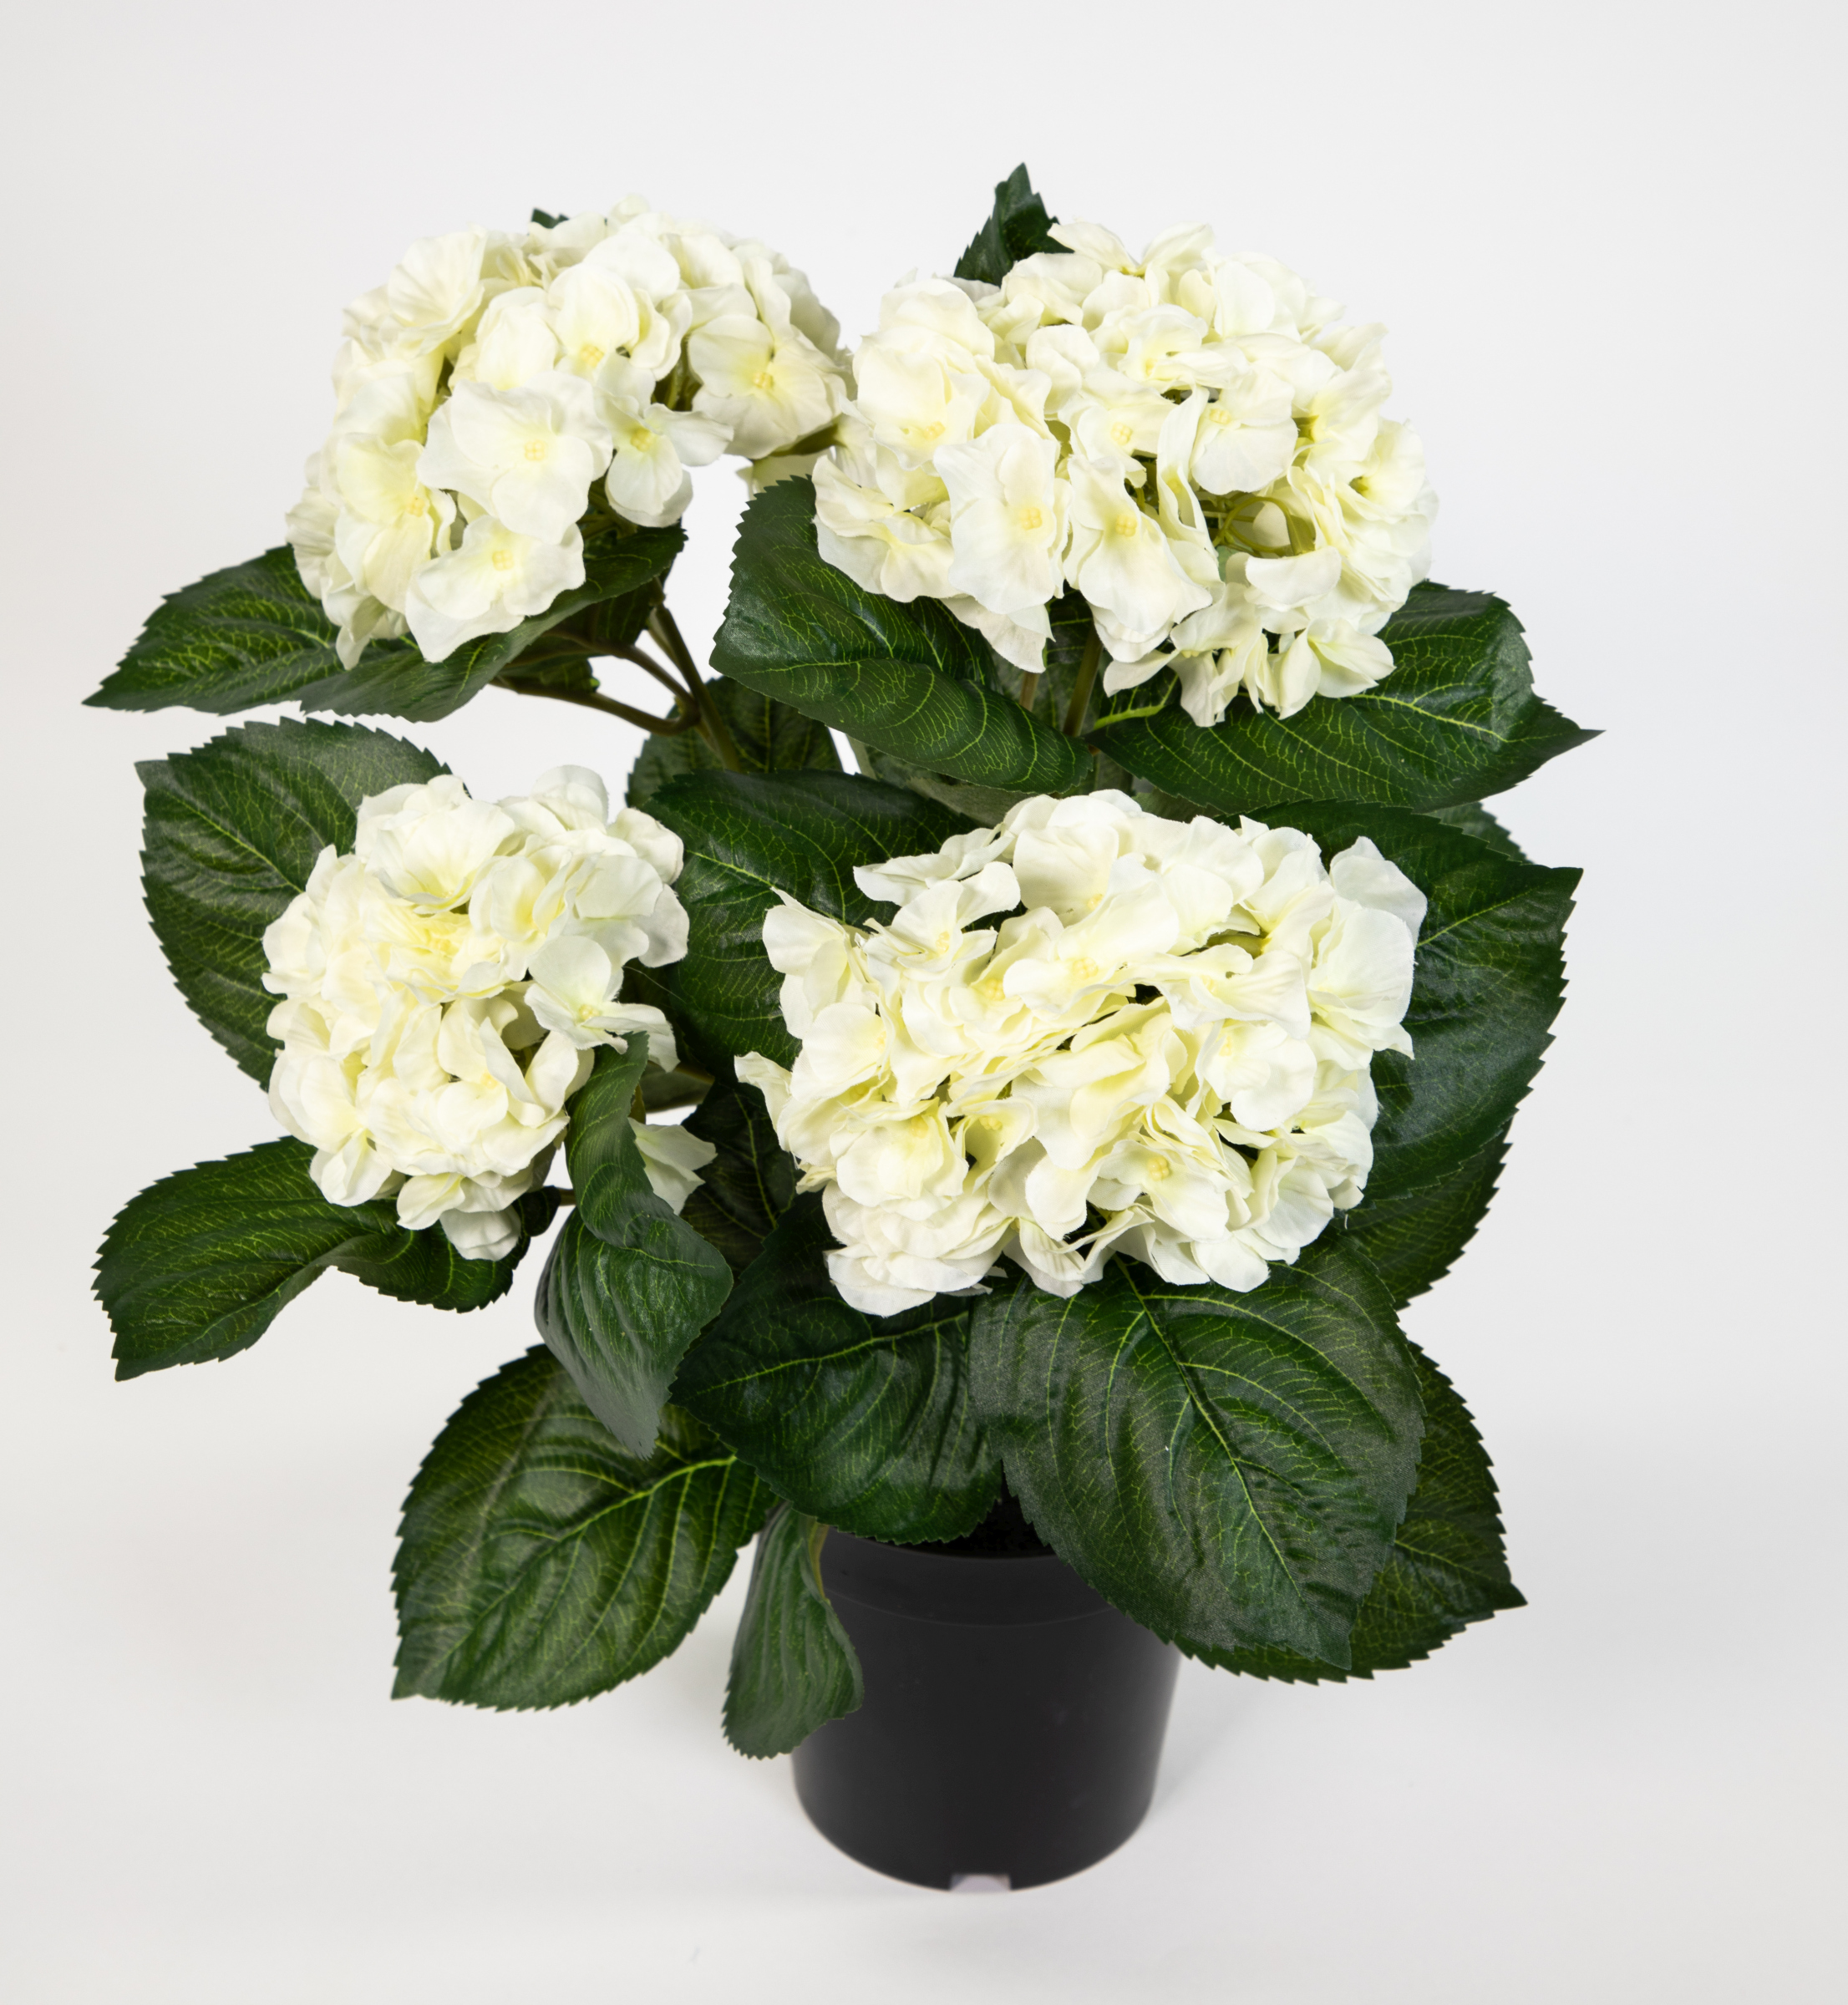 künstliche Blumen im Hortensie 42cm Hortensienbusch LM weiß-creme Topf Deluxe Kunstpflanzen Pflanzen